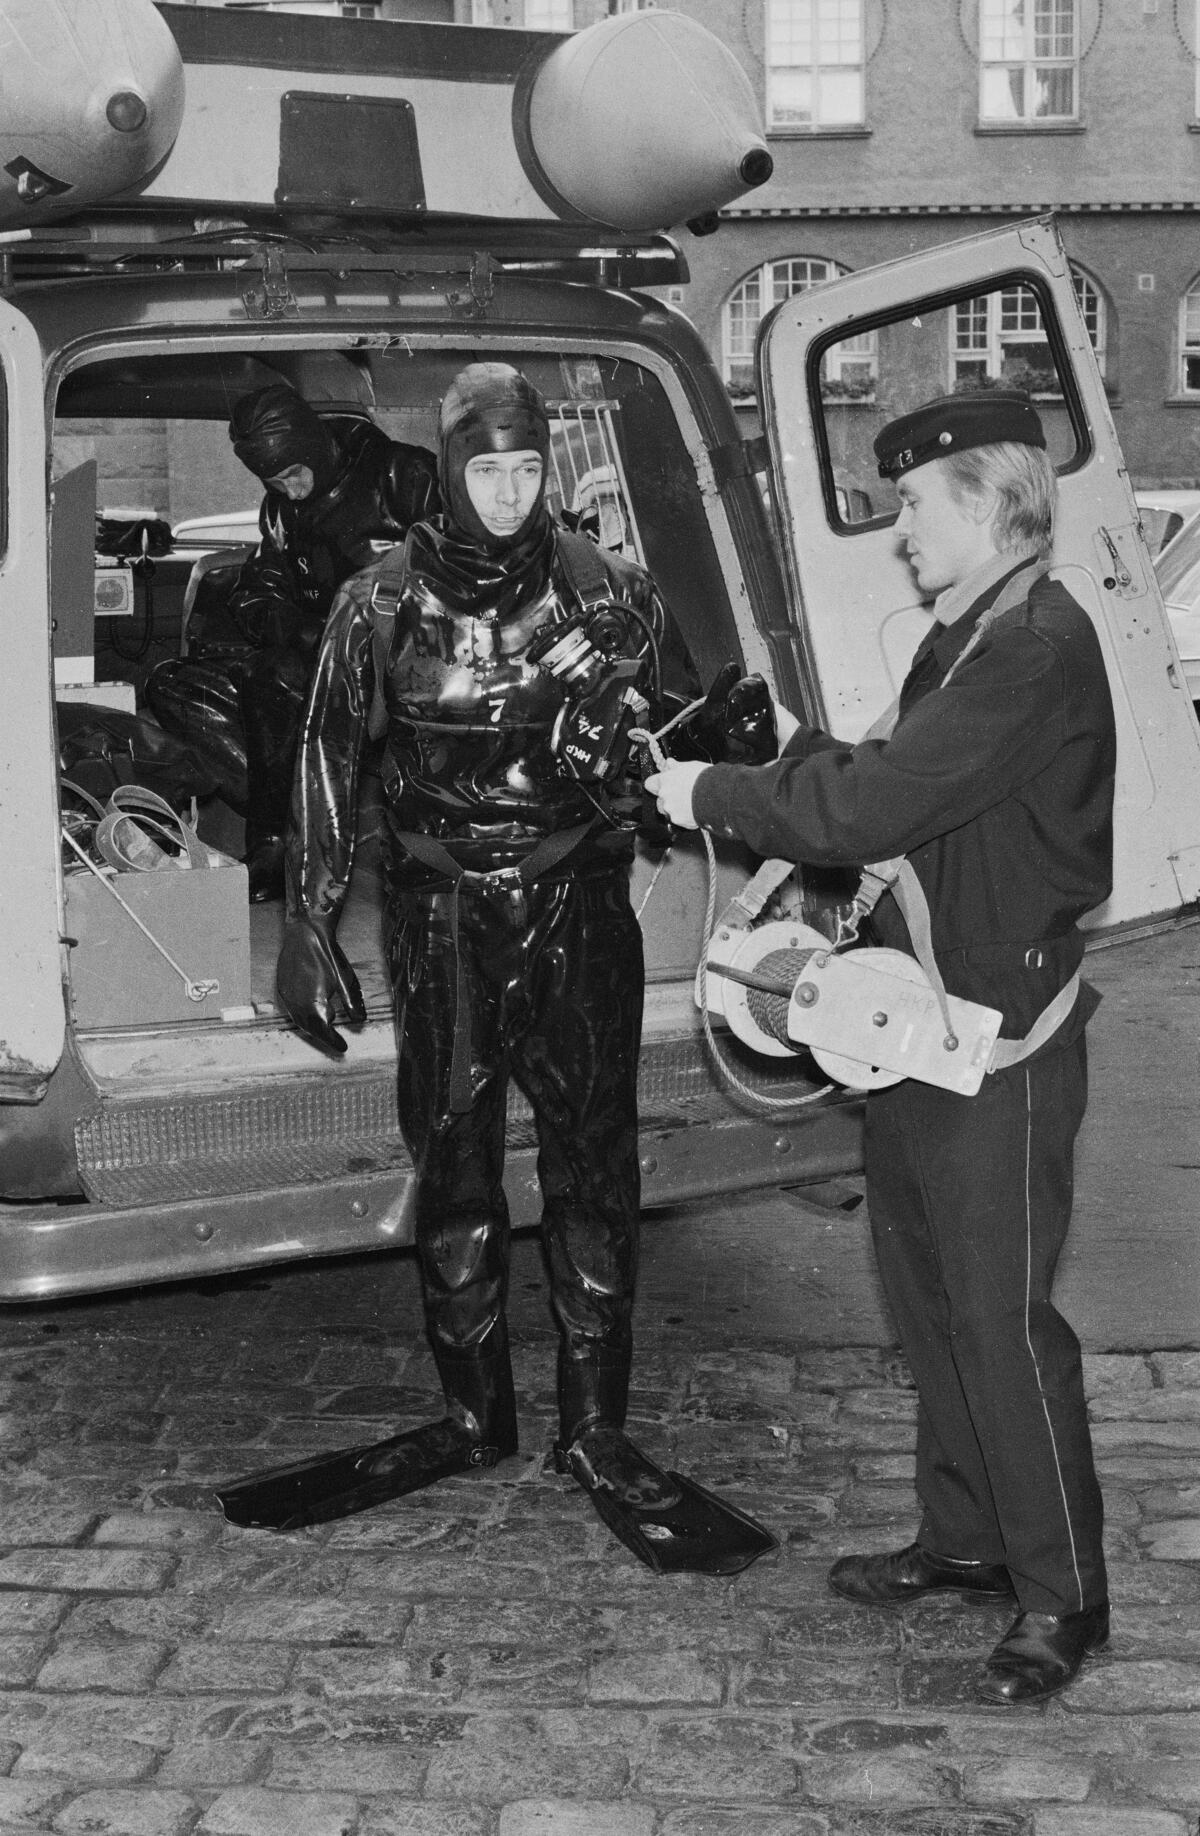 Pakettiauton avonaisten takaovien edessä seisoo sukelluspukuun ja räpylöihin pukeutunut mies. Hänen oikealla puolellaan seisoo sivuttain univormupukuinen mies. Auton sisällä näkyy osittain toinen sukelluspukuinen mies kyykyssä.